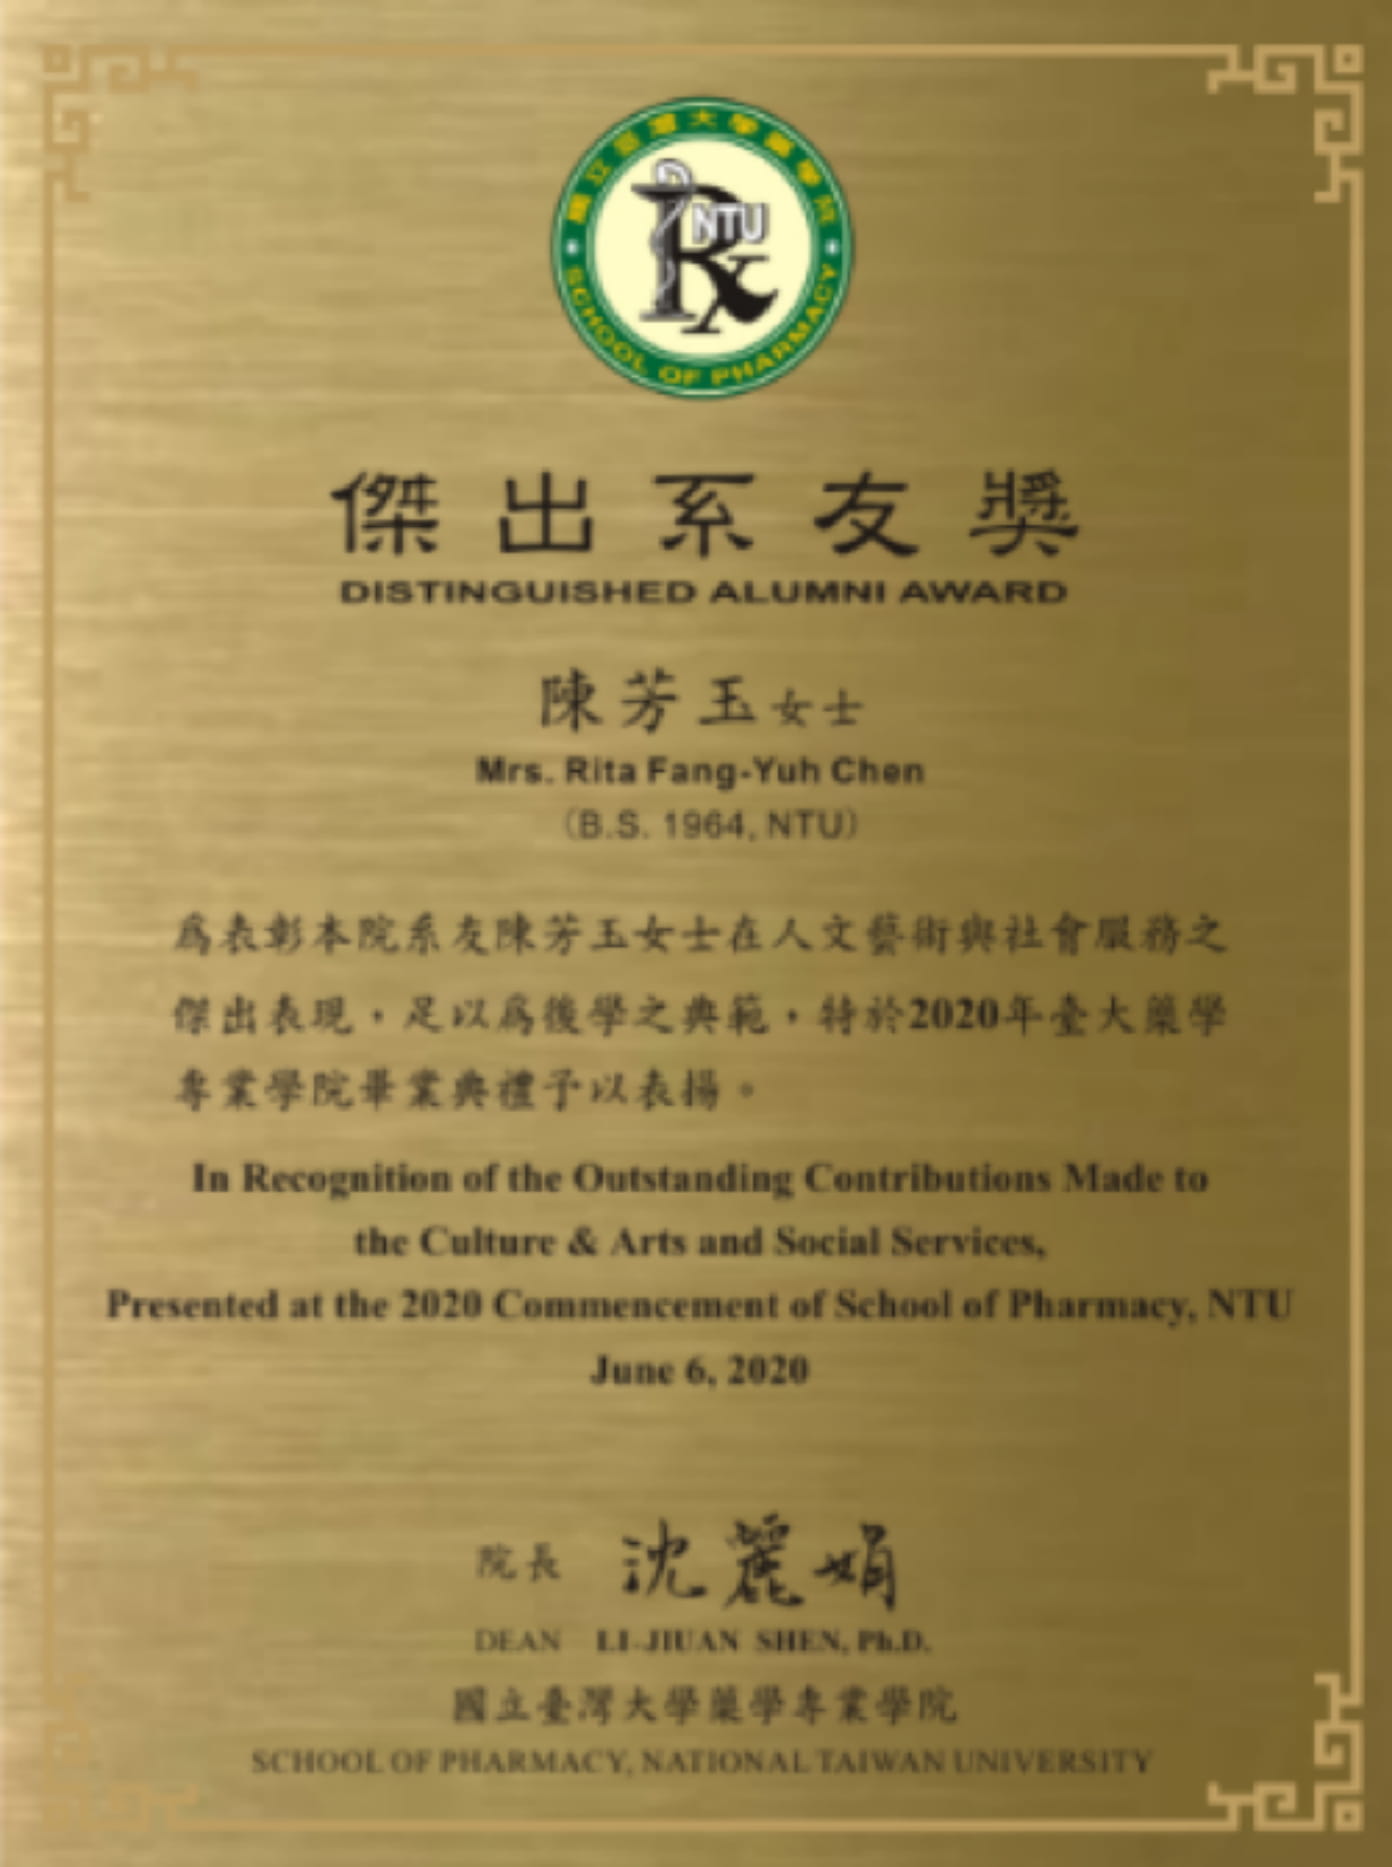 73. Rita Fang-Yuh Chen Received Outstanding Alumni  Award 2020 by the  School of Pharmacy, National Taiwan Univ.